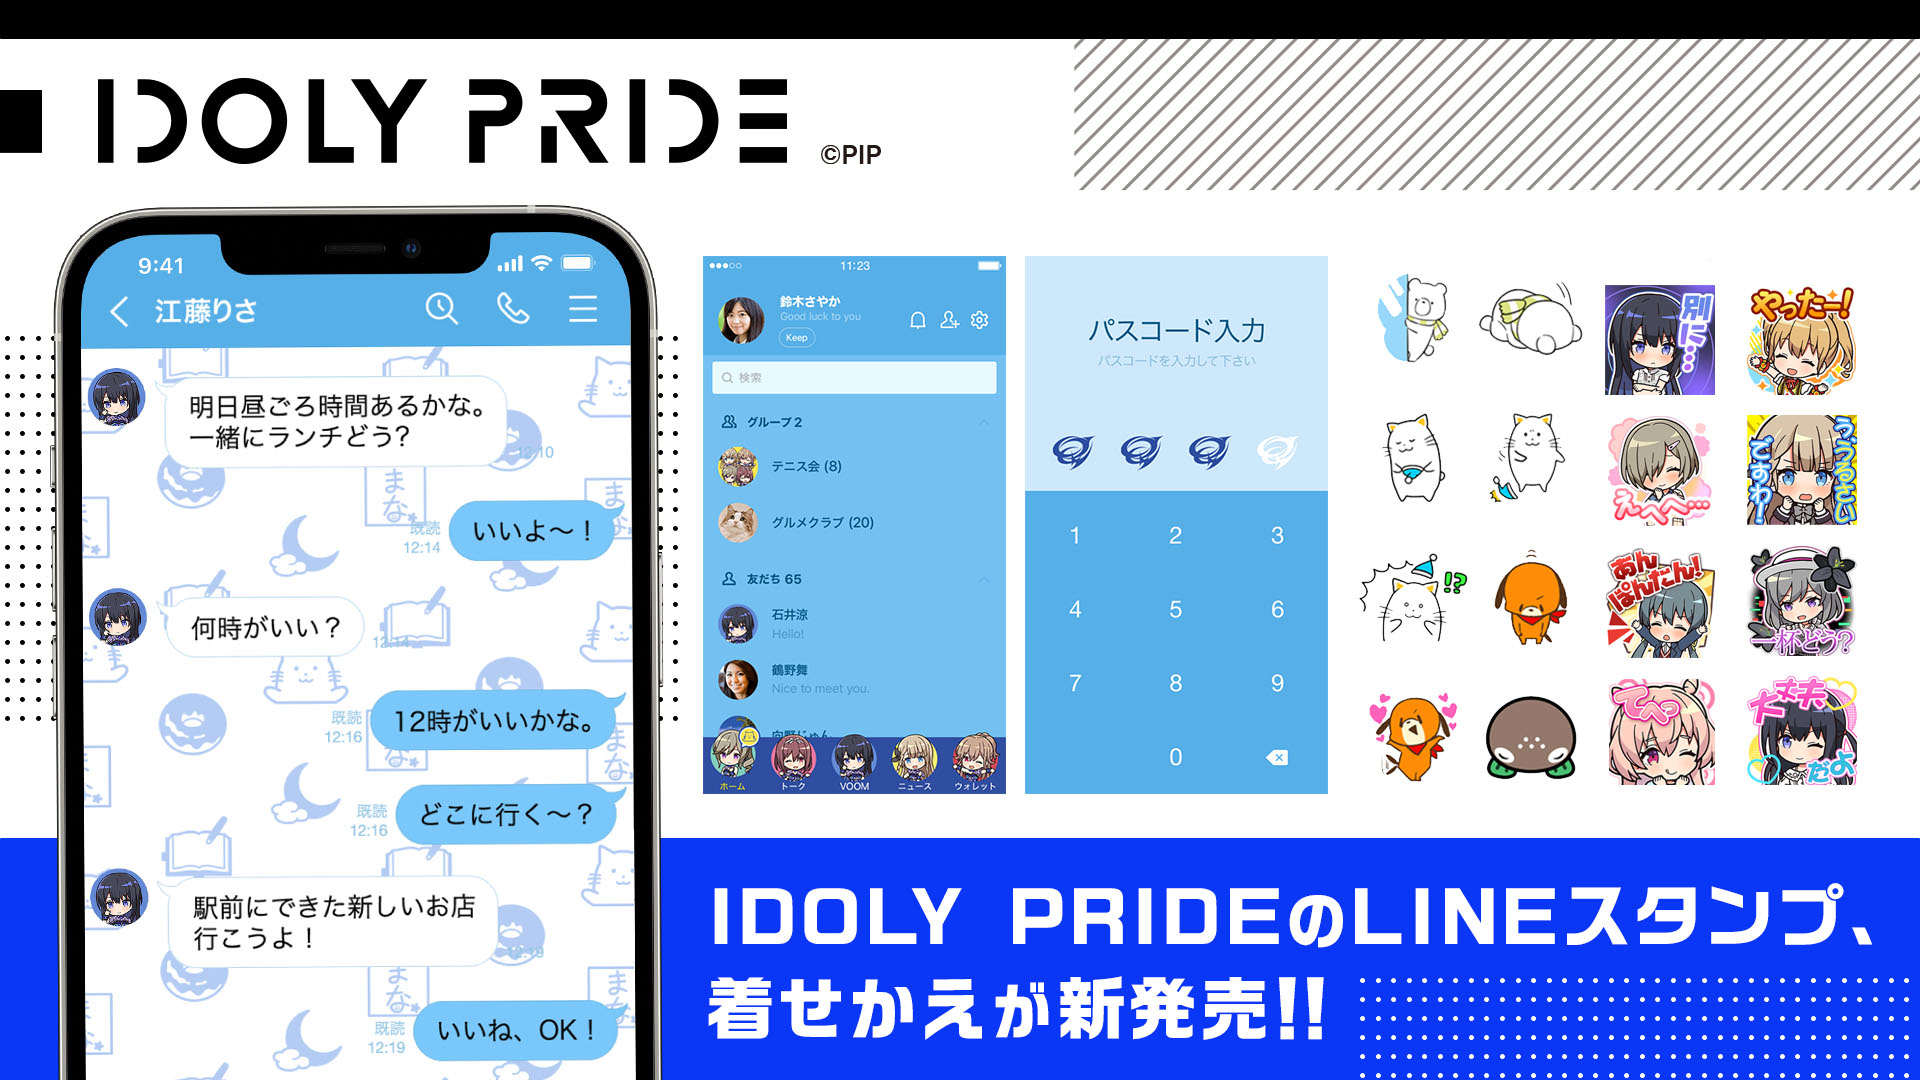 メディアミックスプロジェクト Idoly Pride より 待望のlineスタンプとline着せかえ が登場 キャラクターイラストのスタンプとゲーム内に登場するスタンプがlineスタンプに 株式会社cyberzのプレスリリース